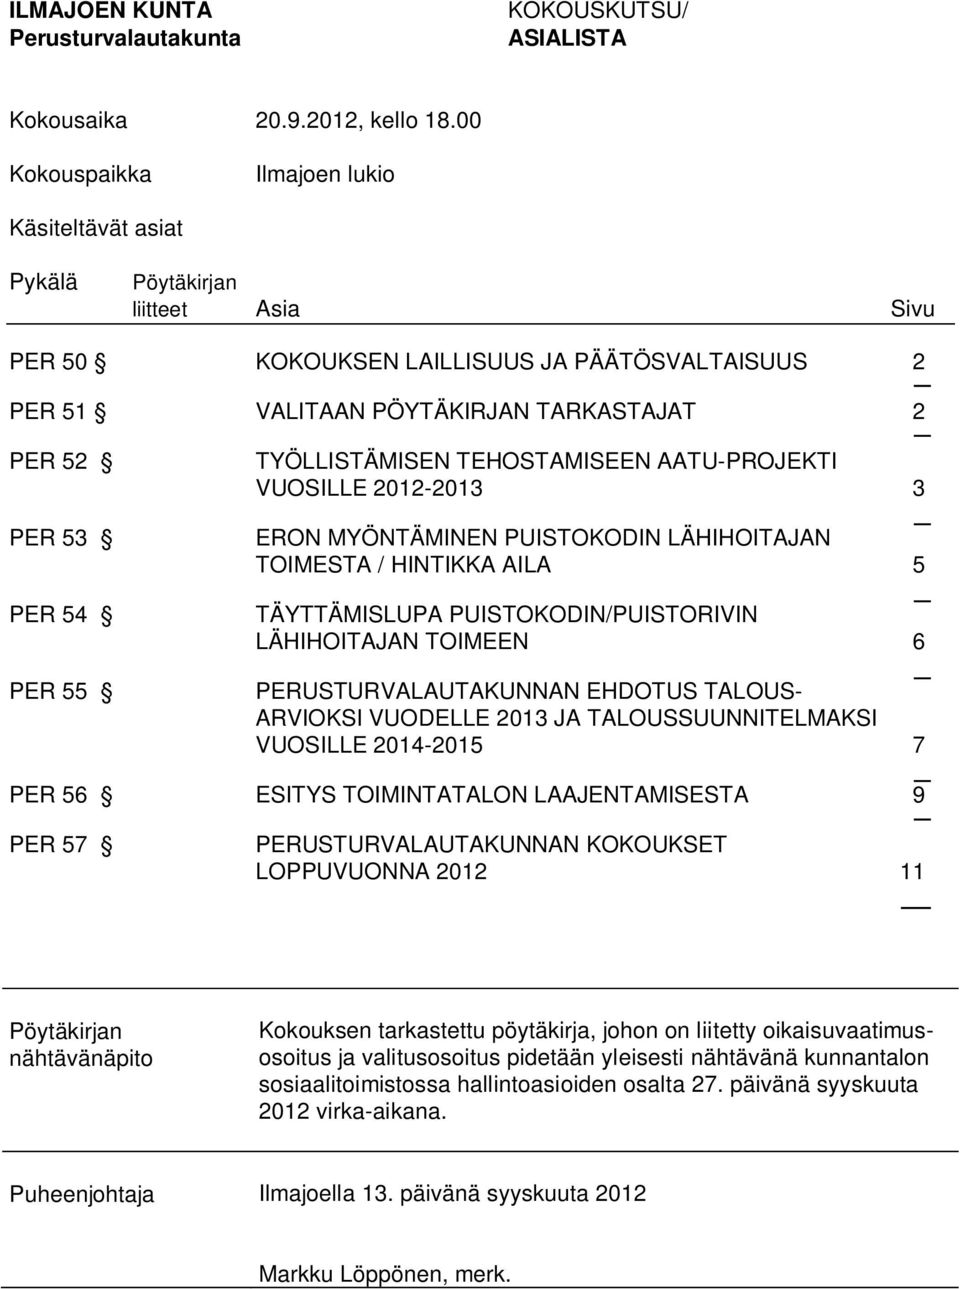 TYÖLLISTÄMISEN TEHOSTAMISEEN AATU-PROJEKTI VUOSILLE 2012-2013 3 ERON MYÖNTÄMINEN PUISTOKODIN LÄHIHOITAJAN TOIMESTA / HINTIKKA AILA 5 TÄYTTÄMISLUPA PUISTOKODIN/PUISTORIVIN LÄHIHOITAJAN TOIMEEN 6